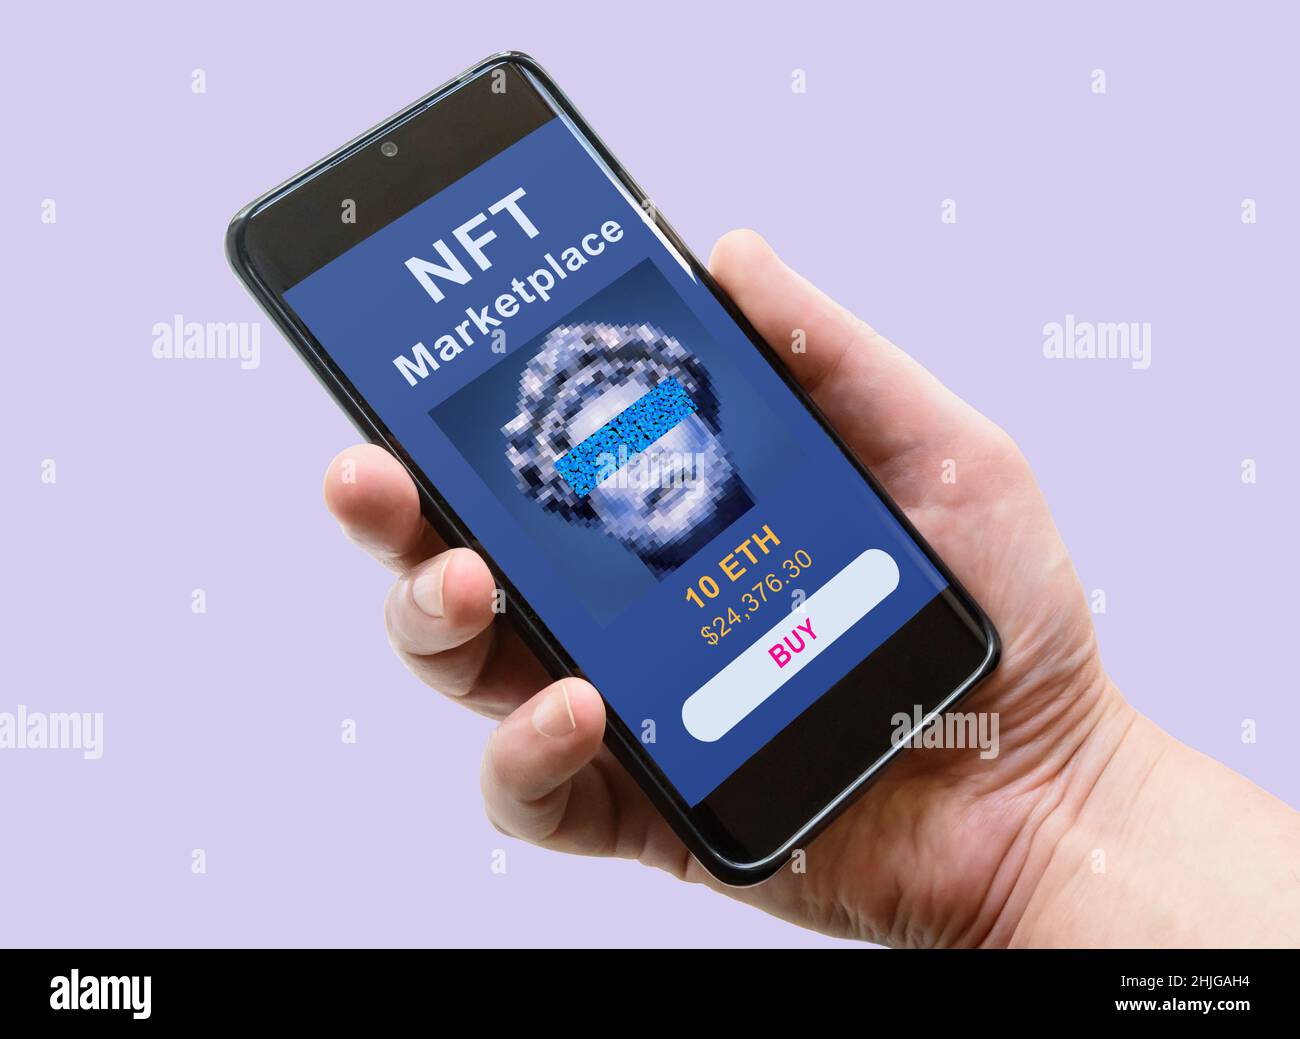 NFT ART in telefono, mano e smartphone con mercato. Il token NFT è criptovaluta non-fungibile. Concetto di blockchain, crittografia tecnica, pagamento, digitale Foto Stock